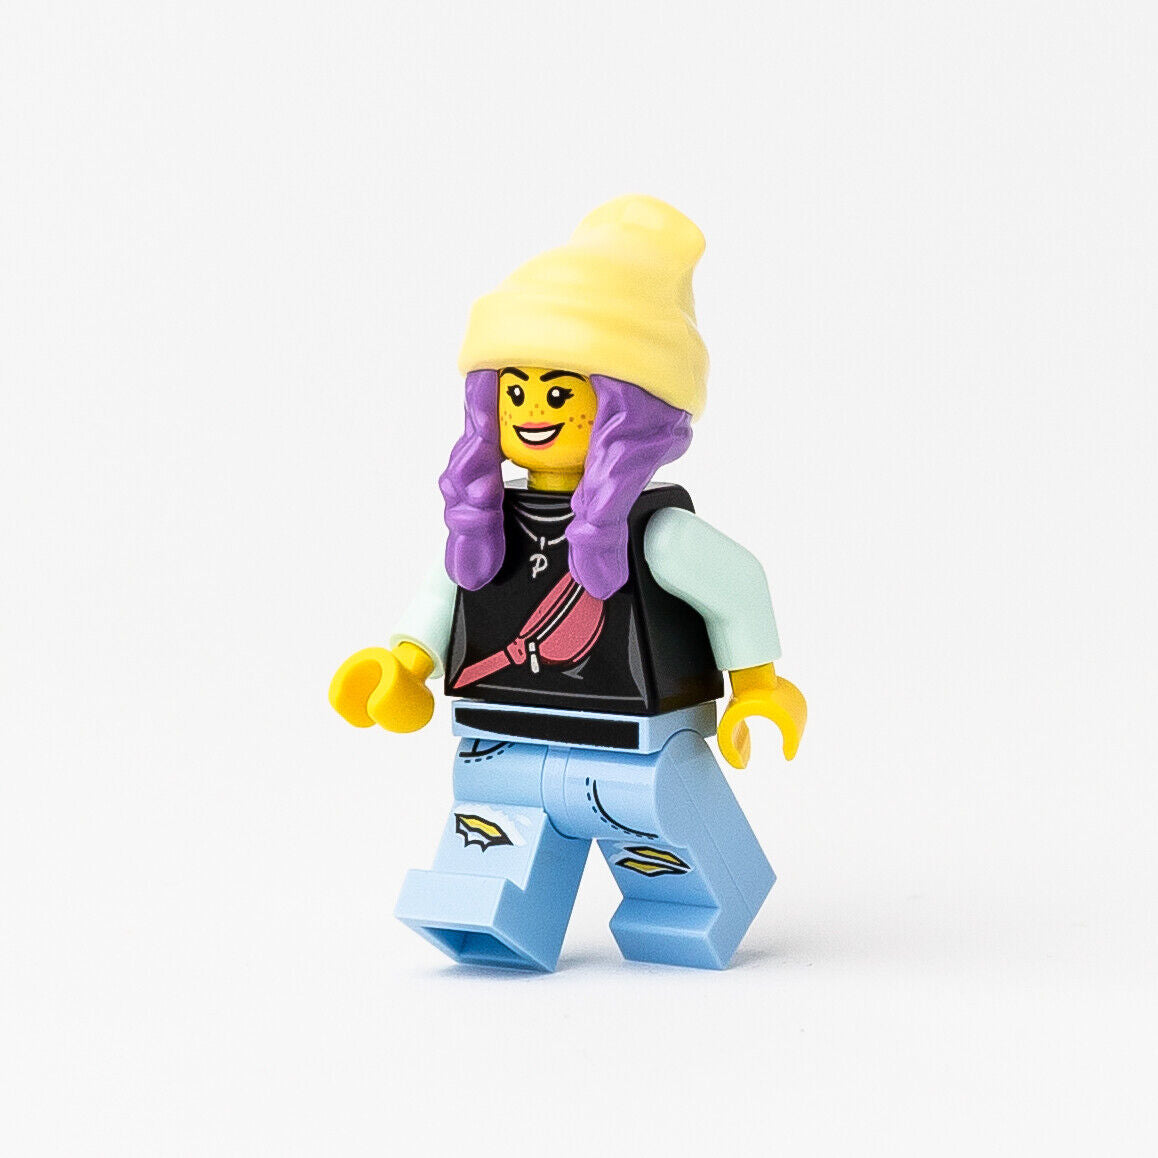 New LEGO Parker L. Jackson - Black Top Beanie Smile / Grumpy Minifigure (hs019)